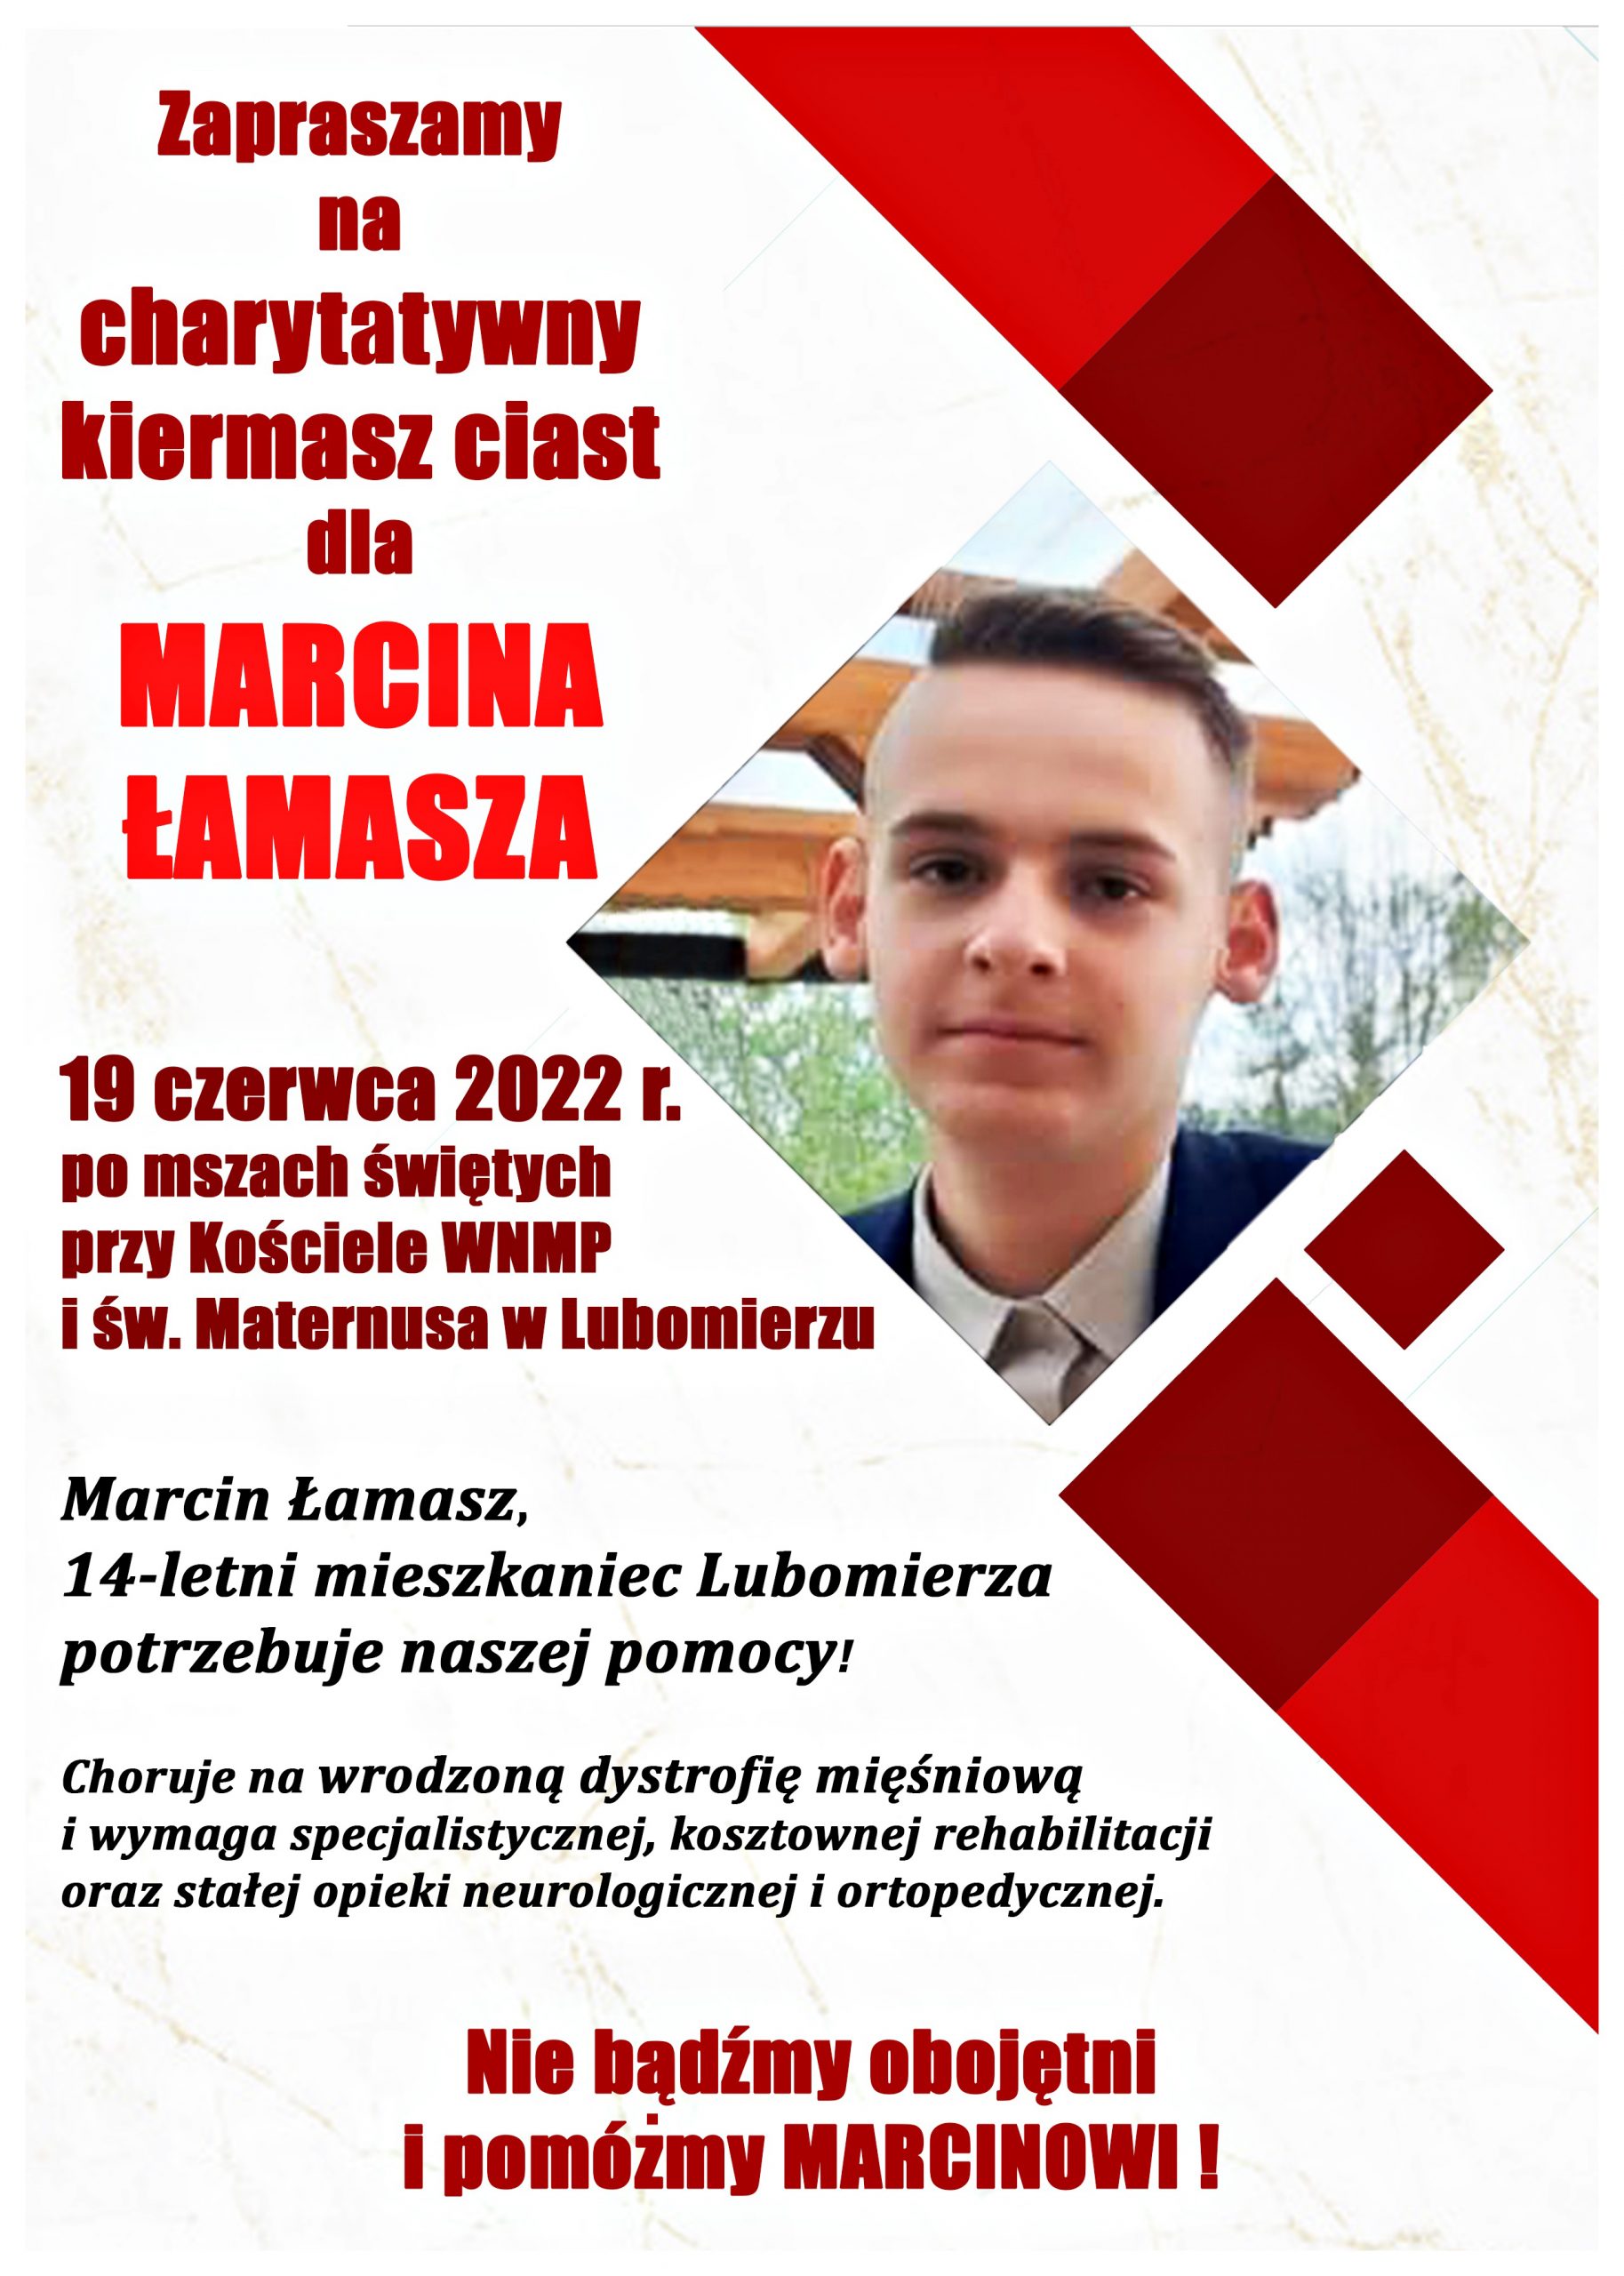 Zapraszamy na charytatywny kiermasz ciast dla Marcina Łamasza!